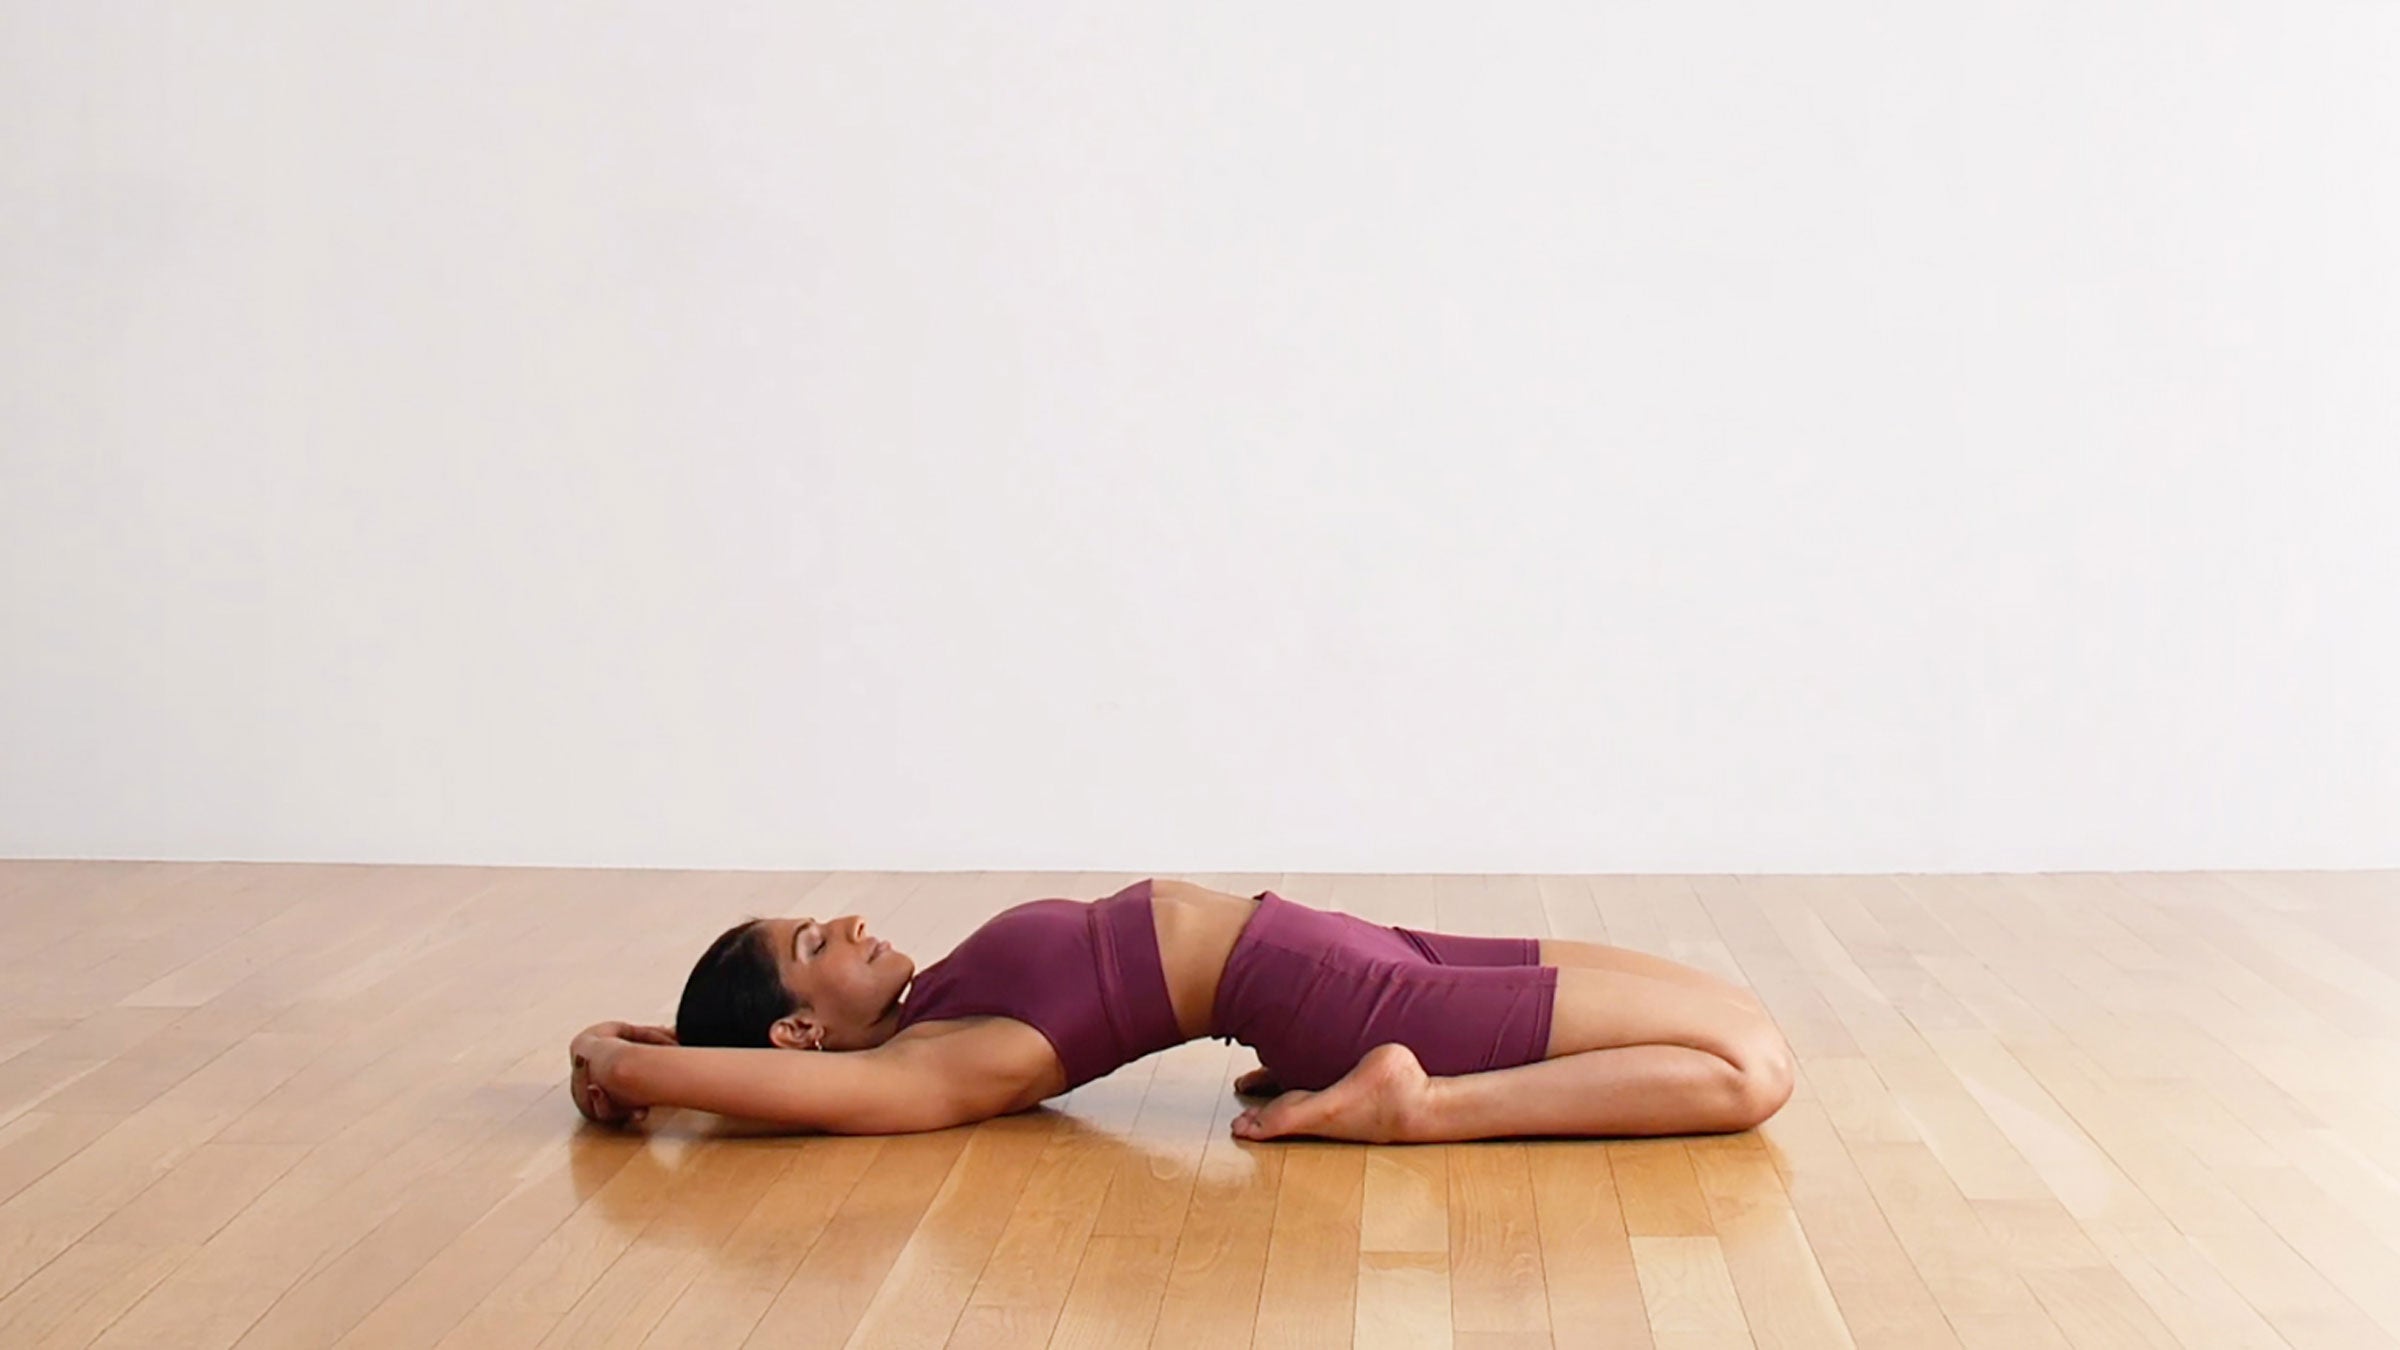 Yoga Stretches For Flexibility | POPSUGAR Fitness